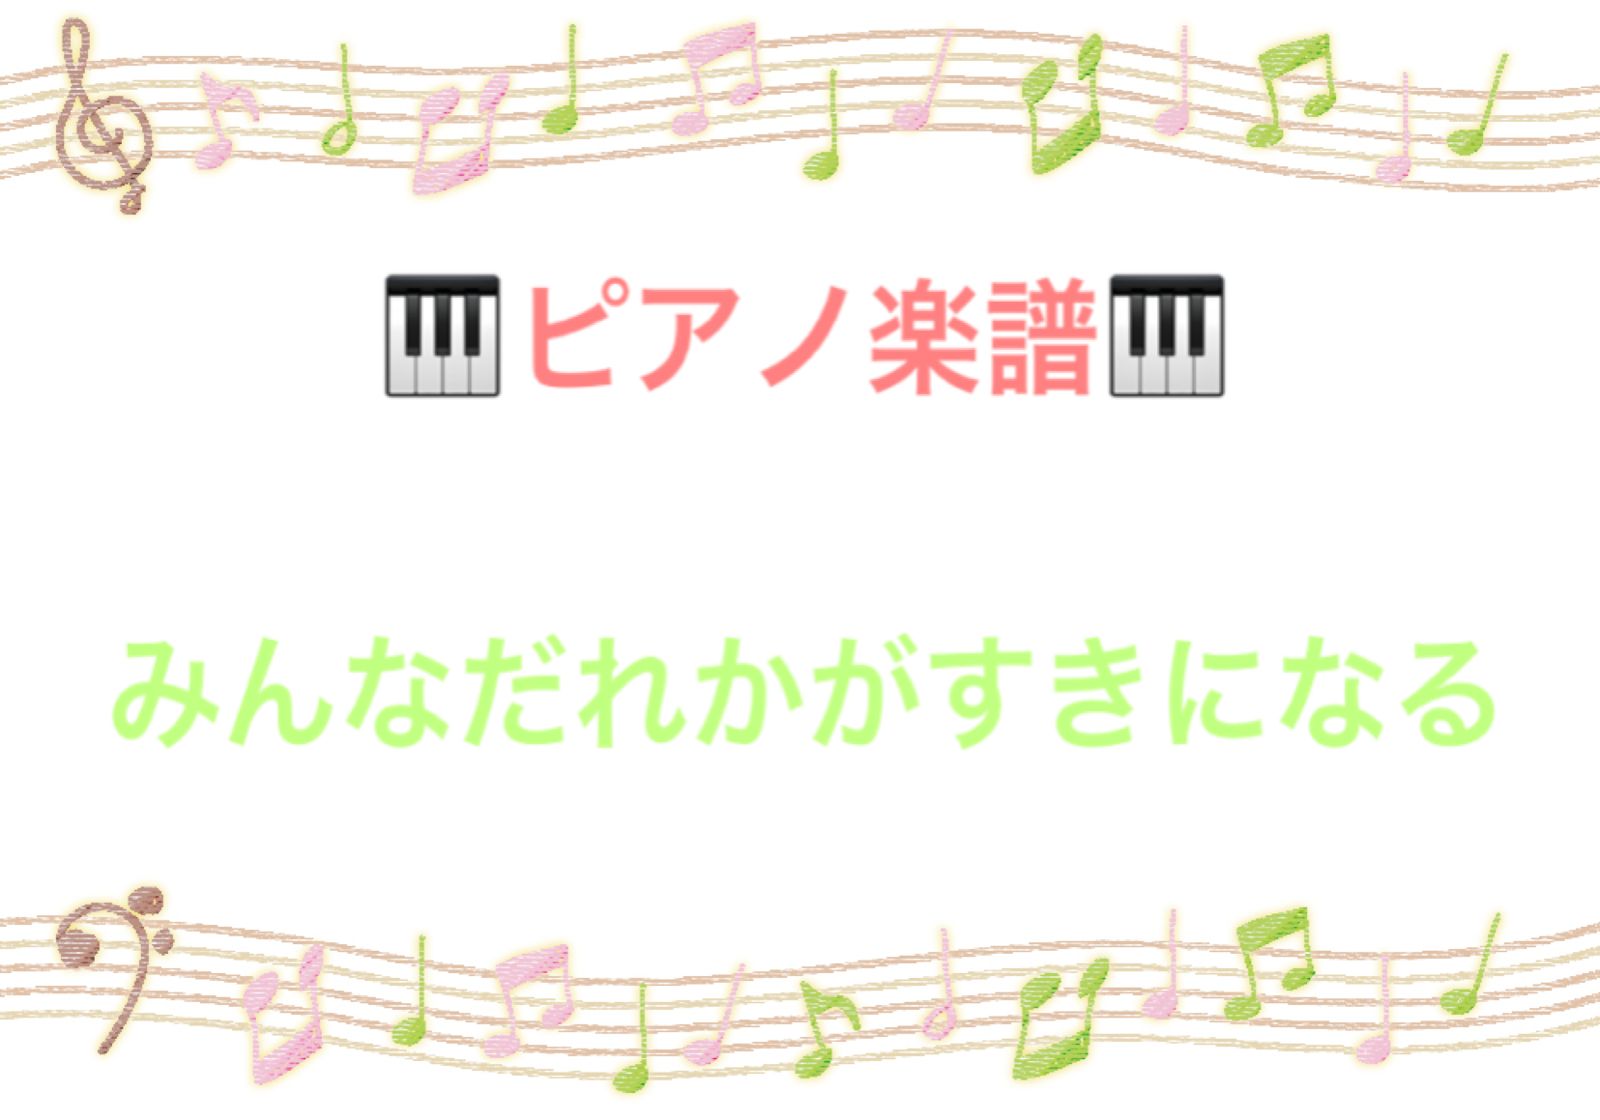 みんなだれかがすきになる ピアノ楽譜♪ - 12/29〜休:簡単◡̈ピアノ